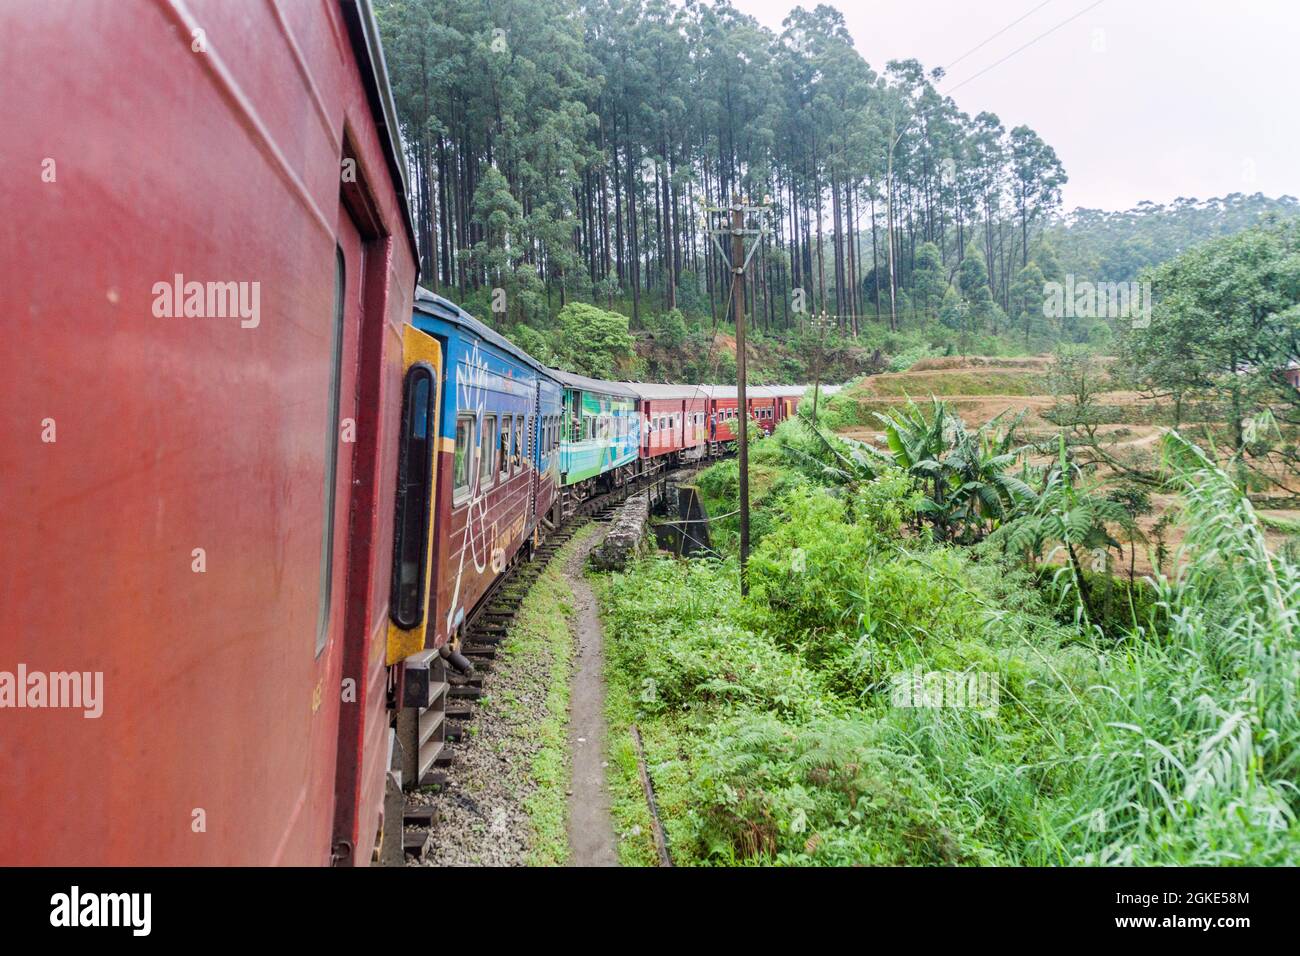 NANU OYA, SRI LANKA - JULY 16, 2016: Local train rides through a rural landscape near Nanu Oya village, Sri Lanka Stock Photo